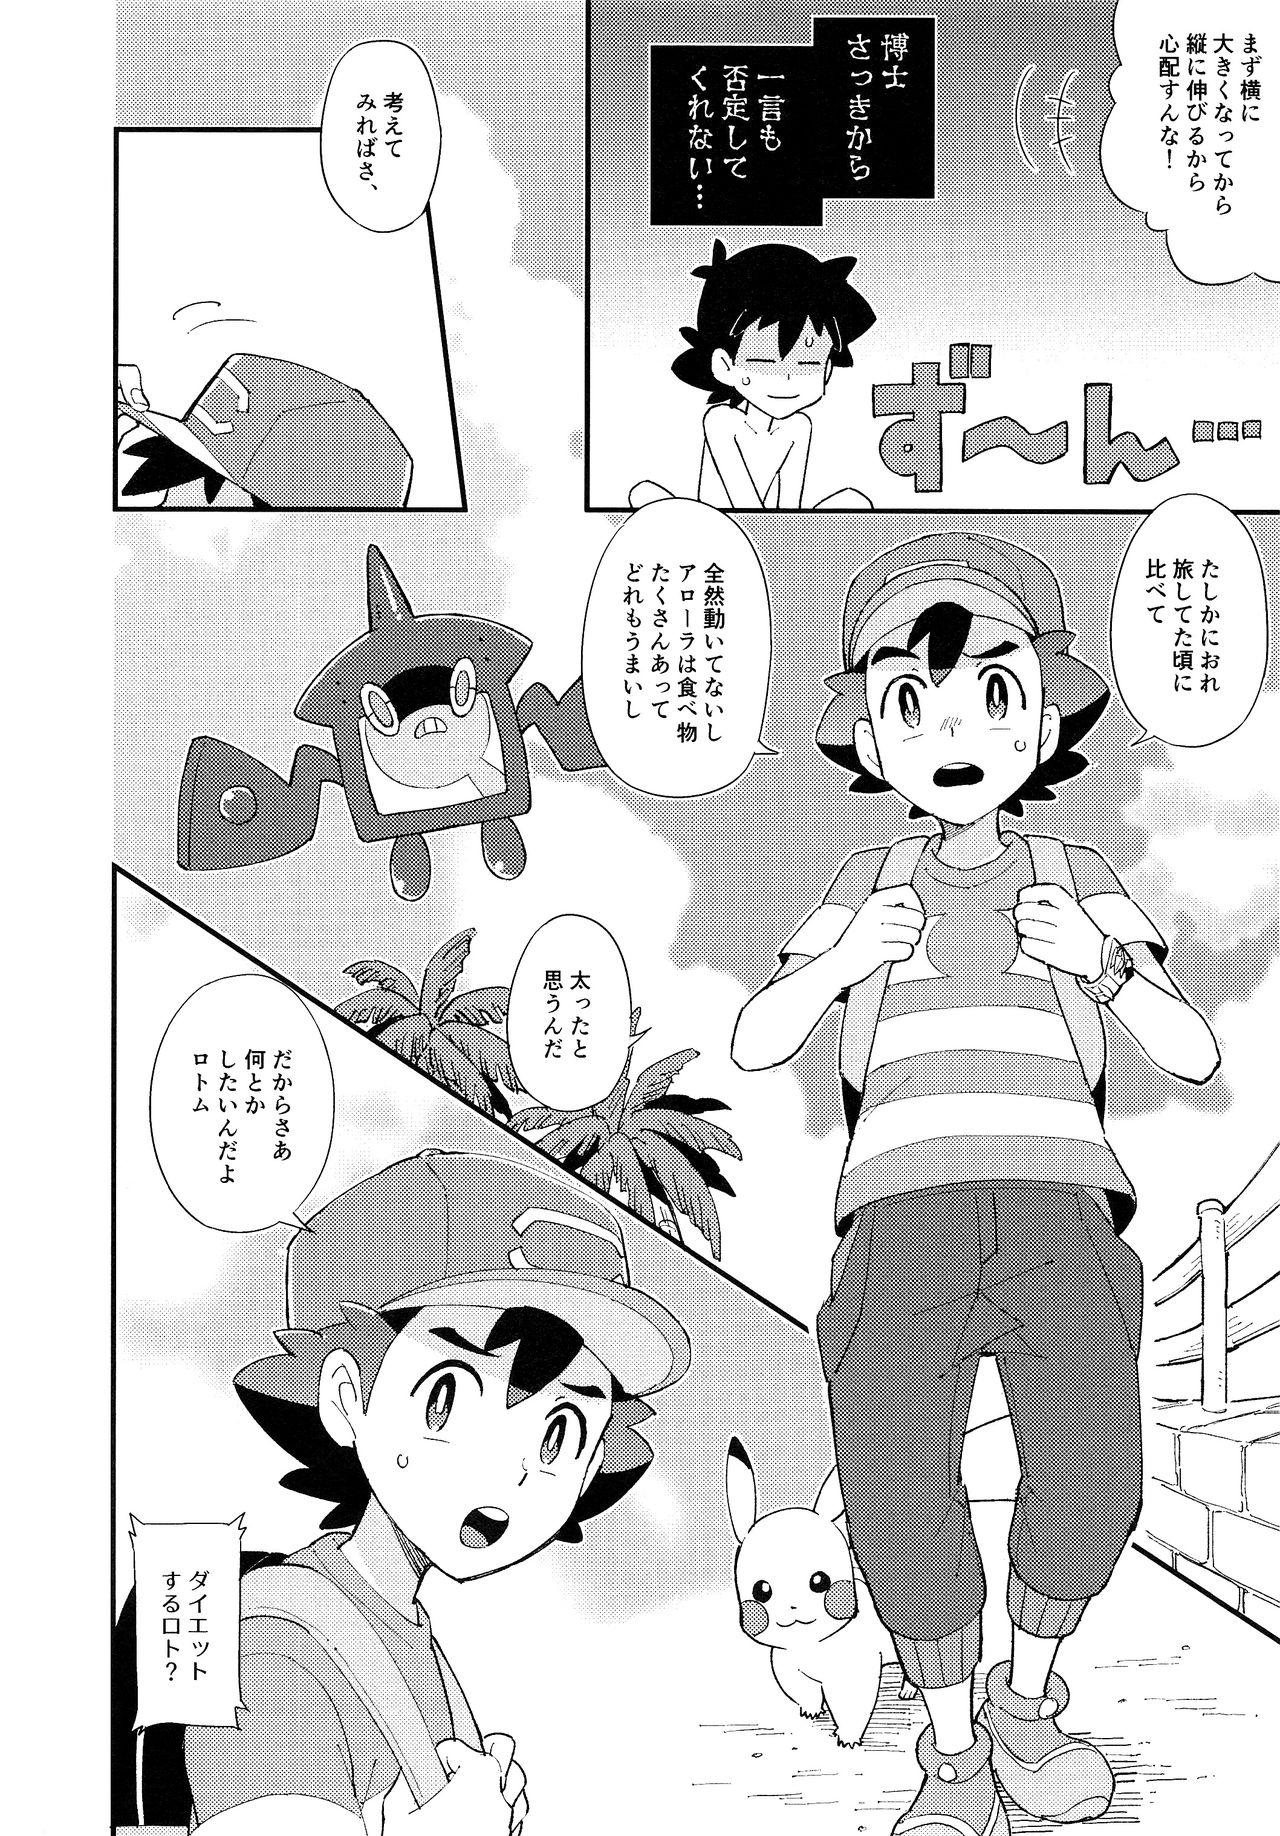 Shecock Ippai Taberu Kimi ga Suki! - Pokemon Amazing - Page 5